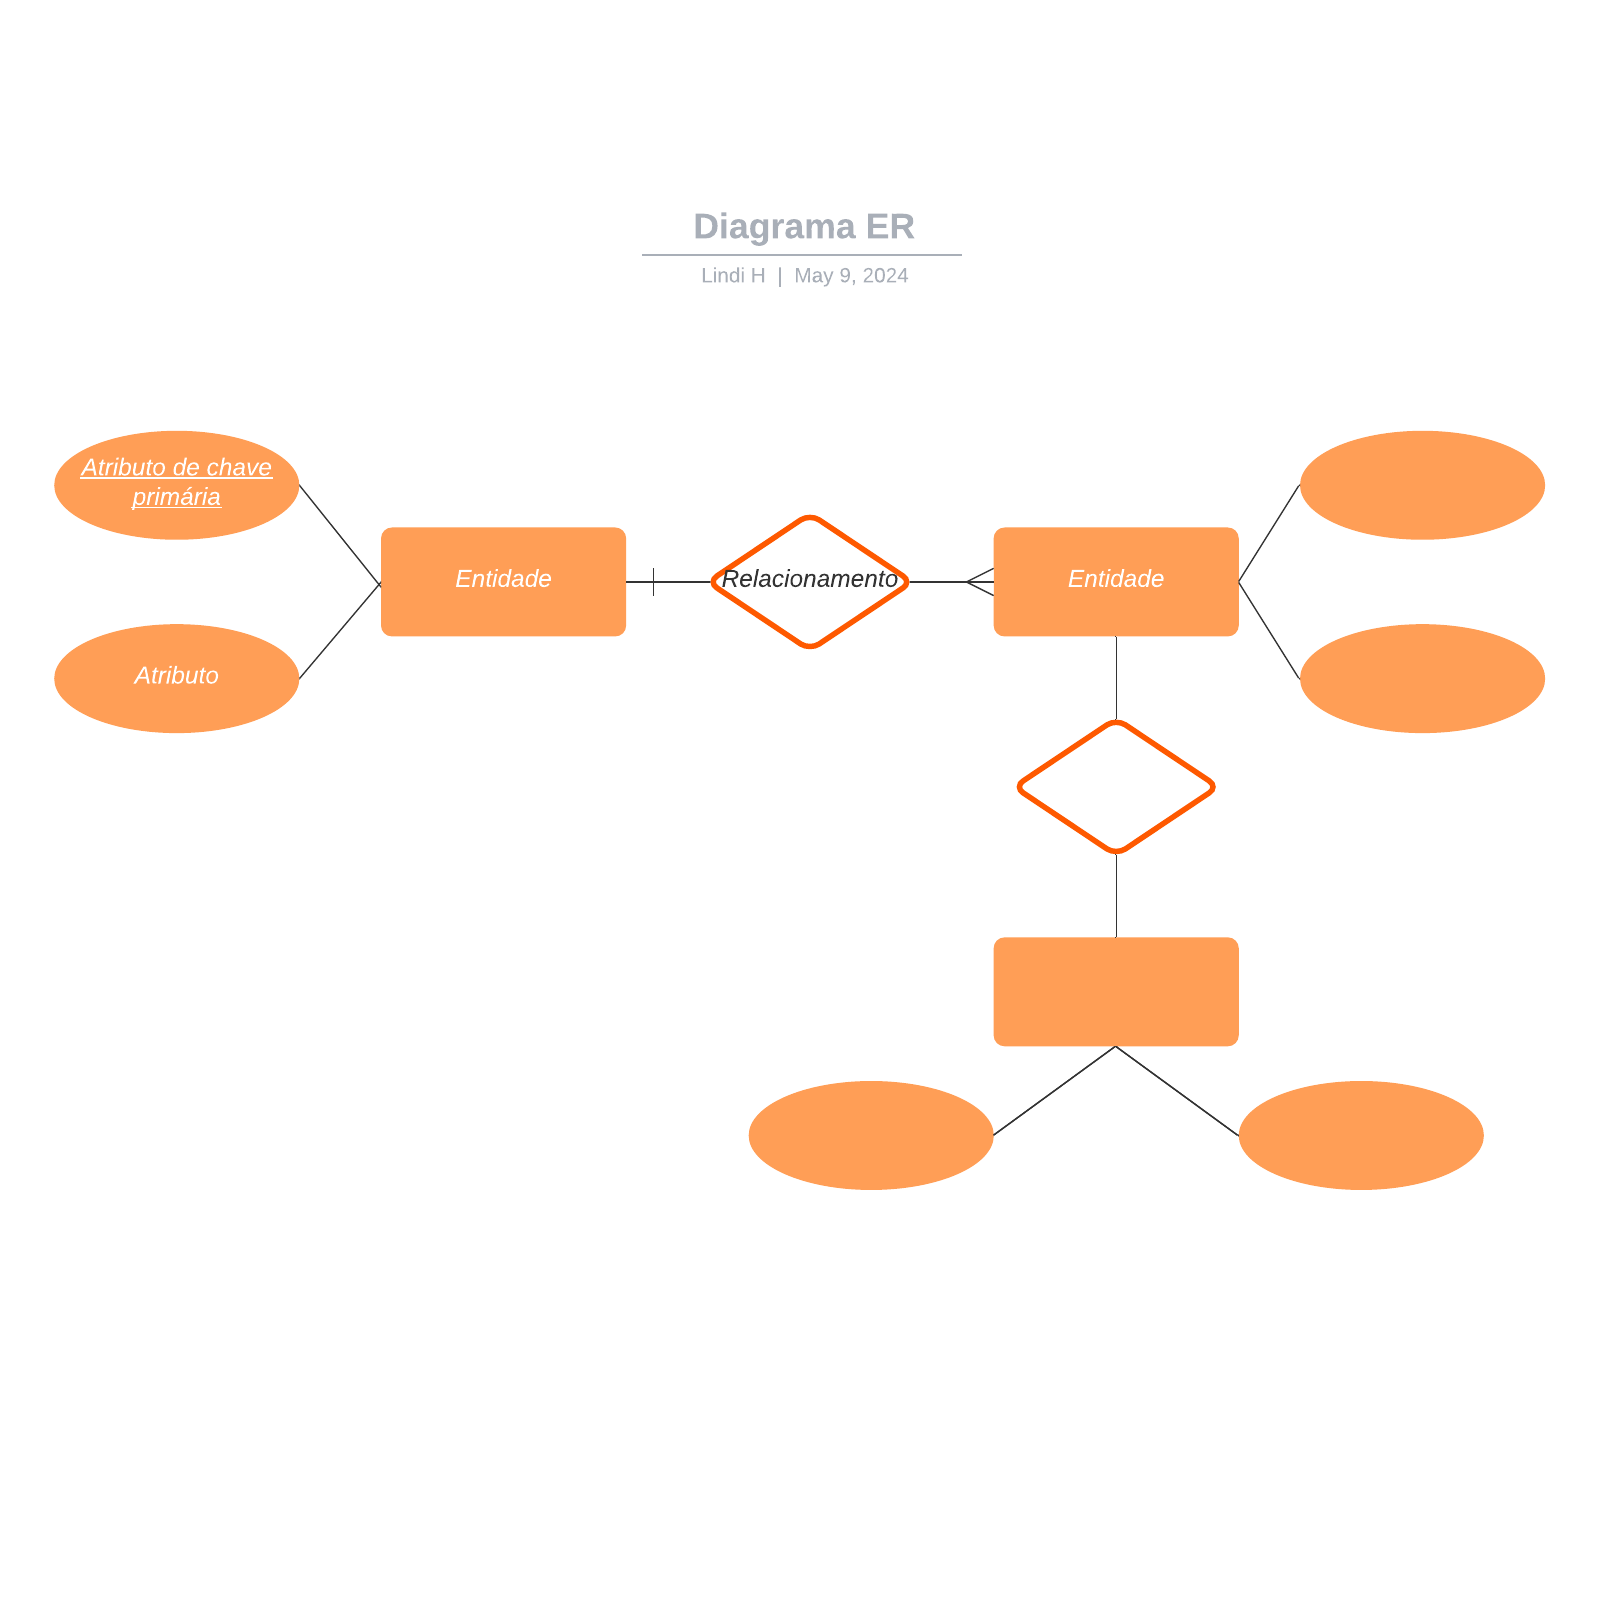 Diagrama ER example